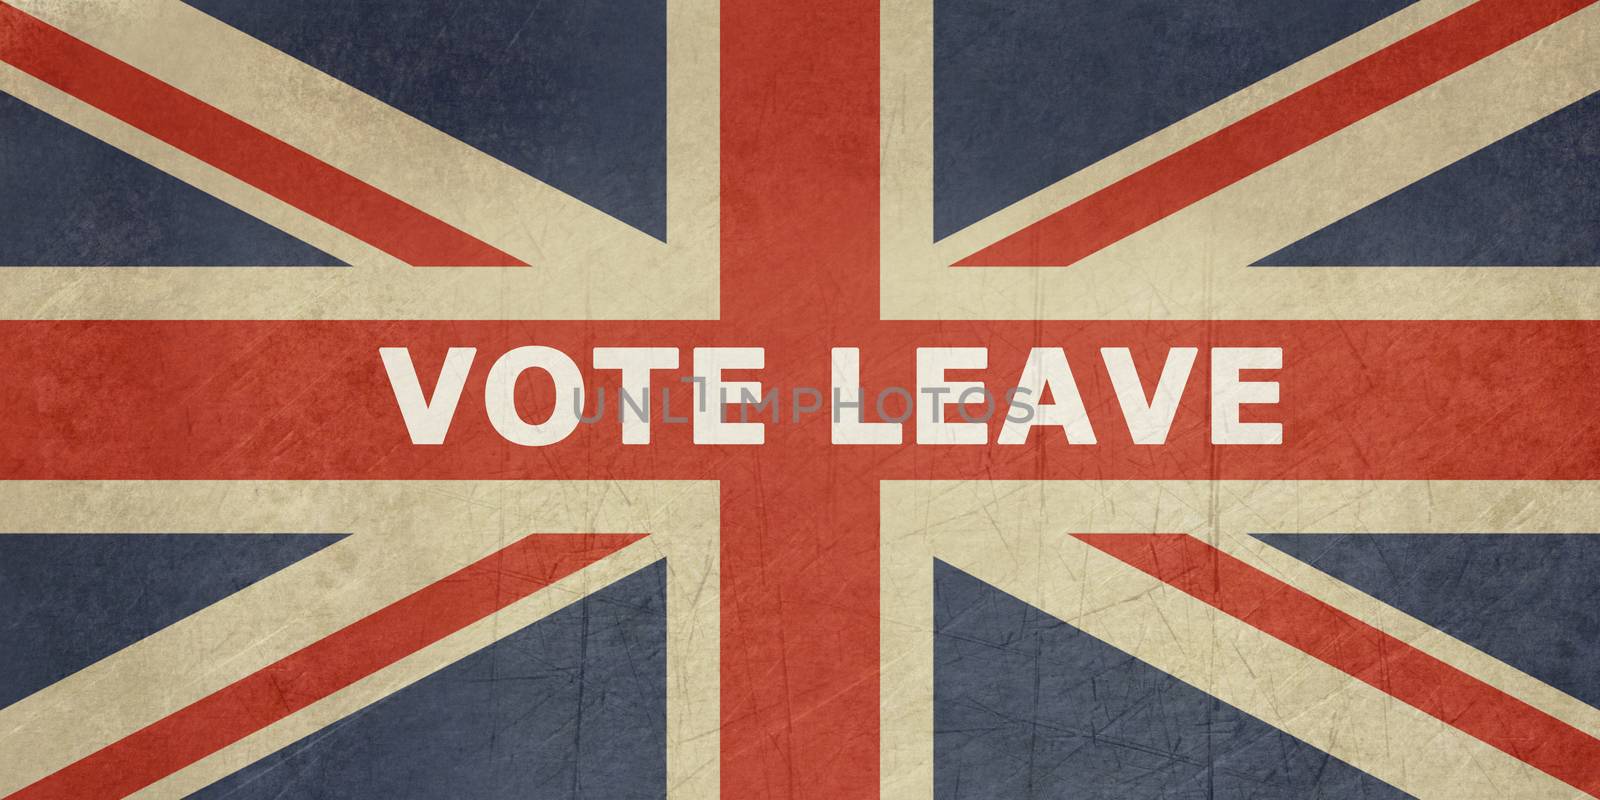 United Kingdom Vote Leave sign on the Union Jack flag.